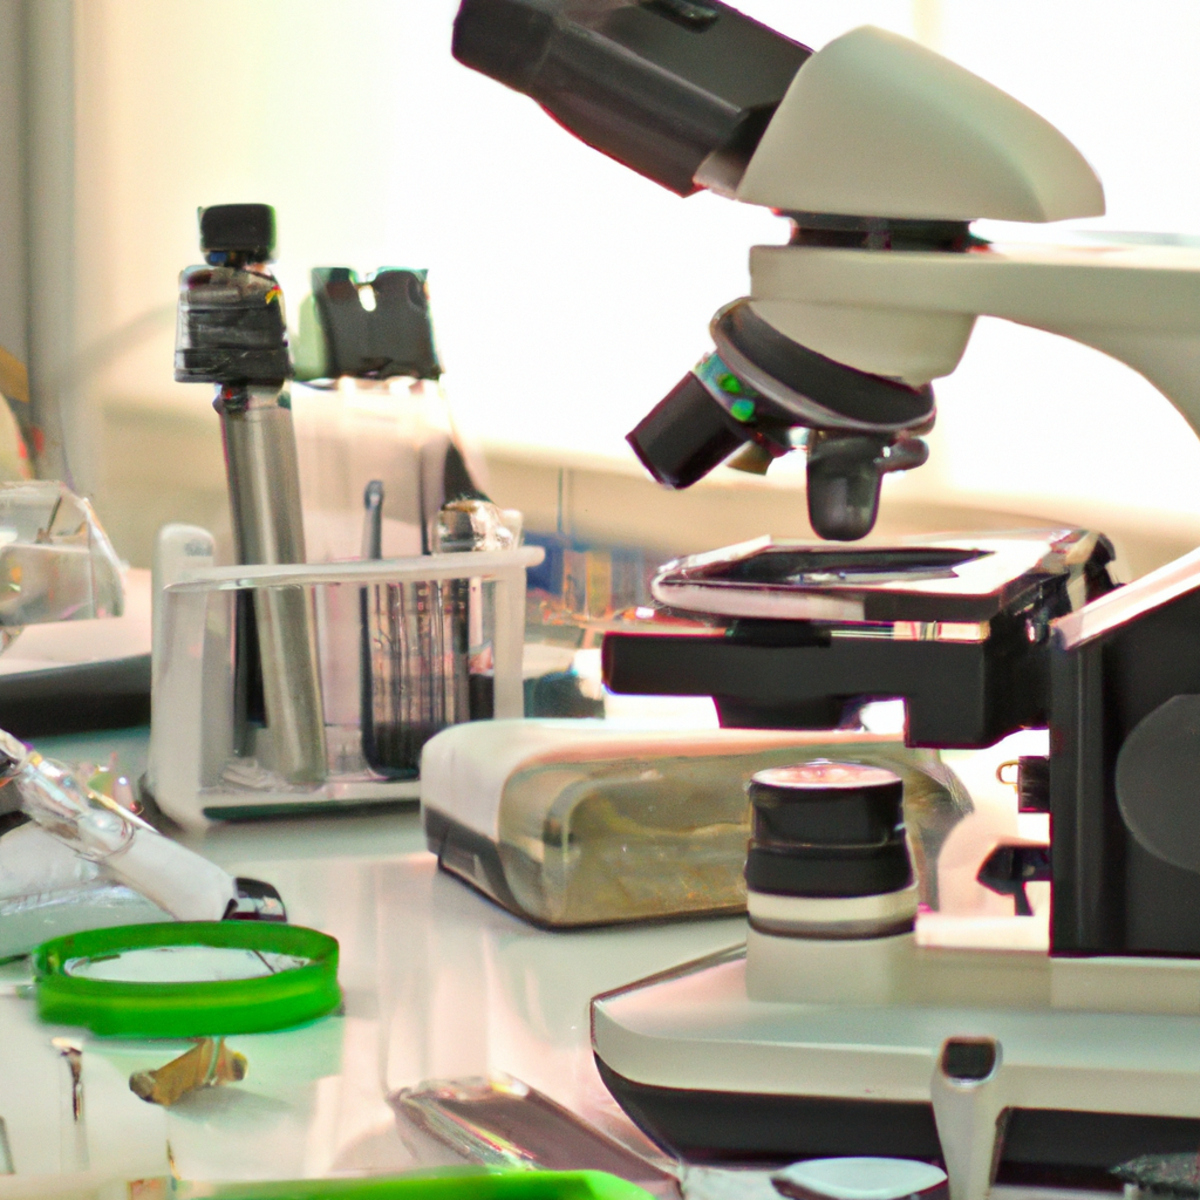 Lab scene with microscope, petri dish, and scientific equipment. Represents research on Fibrodysplasia Ossificans Progressiva.